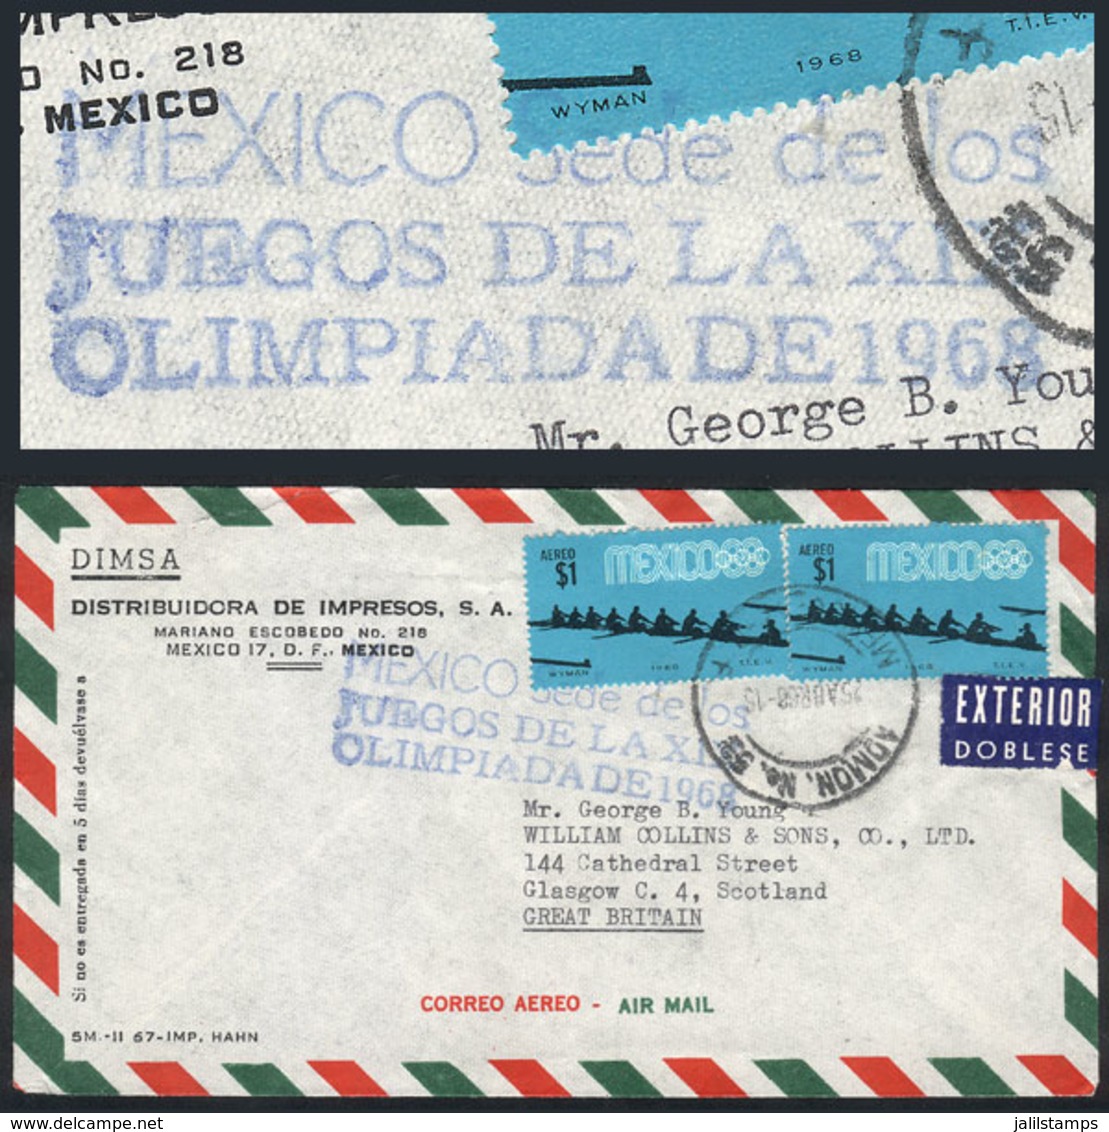 MEXICO: 25/AP/1968 Mexico DF - Great Britain, Airmail Cover With Blue Handstamp "MEXICO SEDE DE LOS JUEGOS DE LA XIX OLI - Mexiko